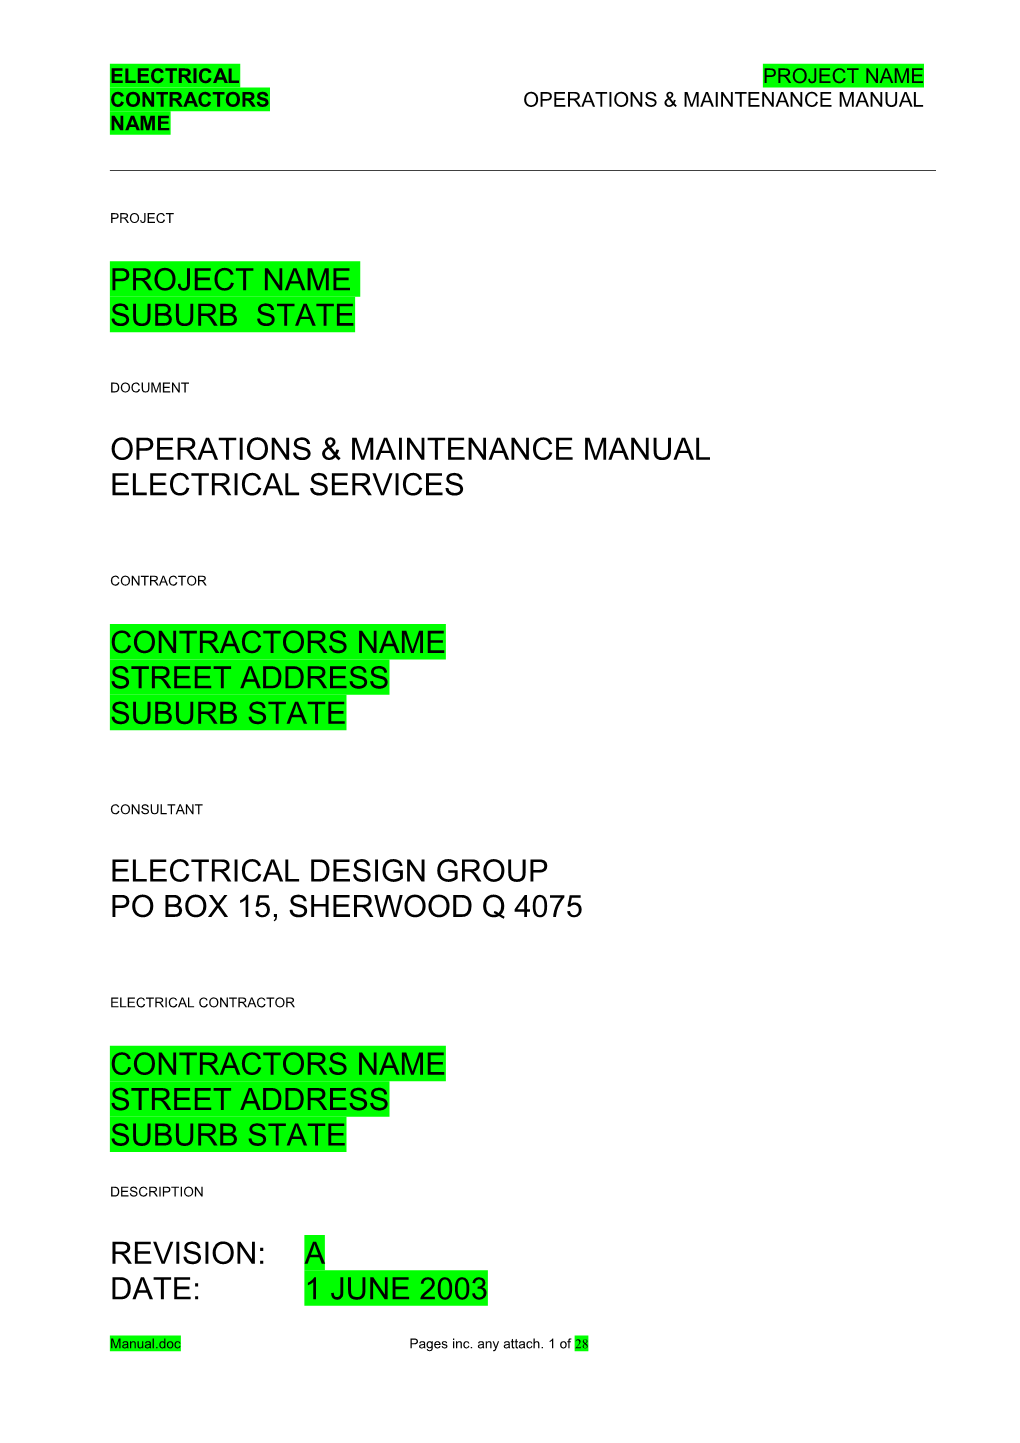 Contractors Operations & Maintenance Manual